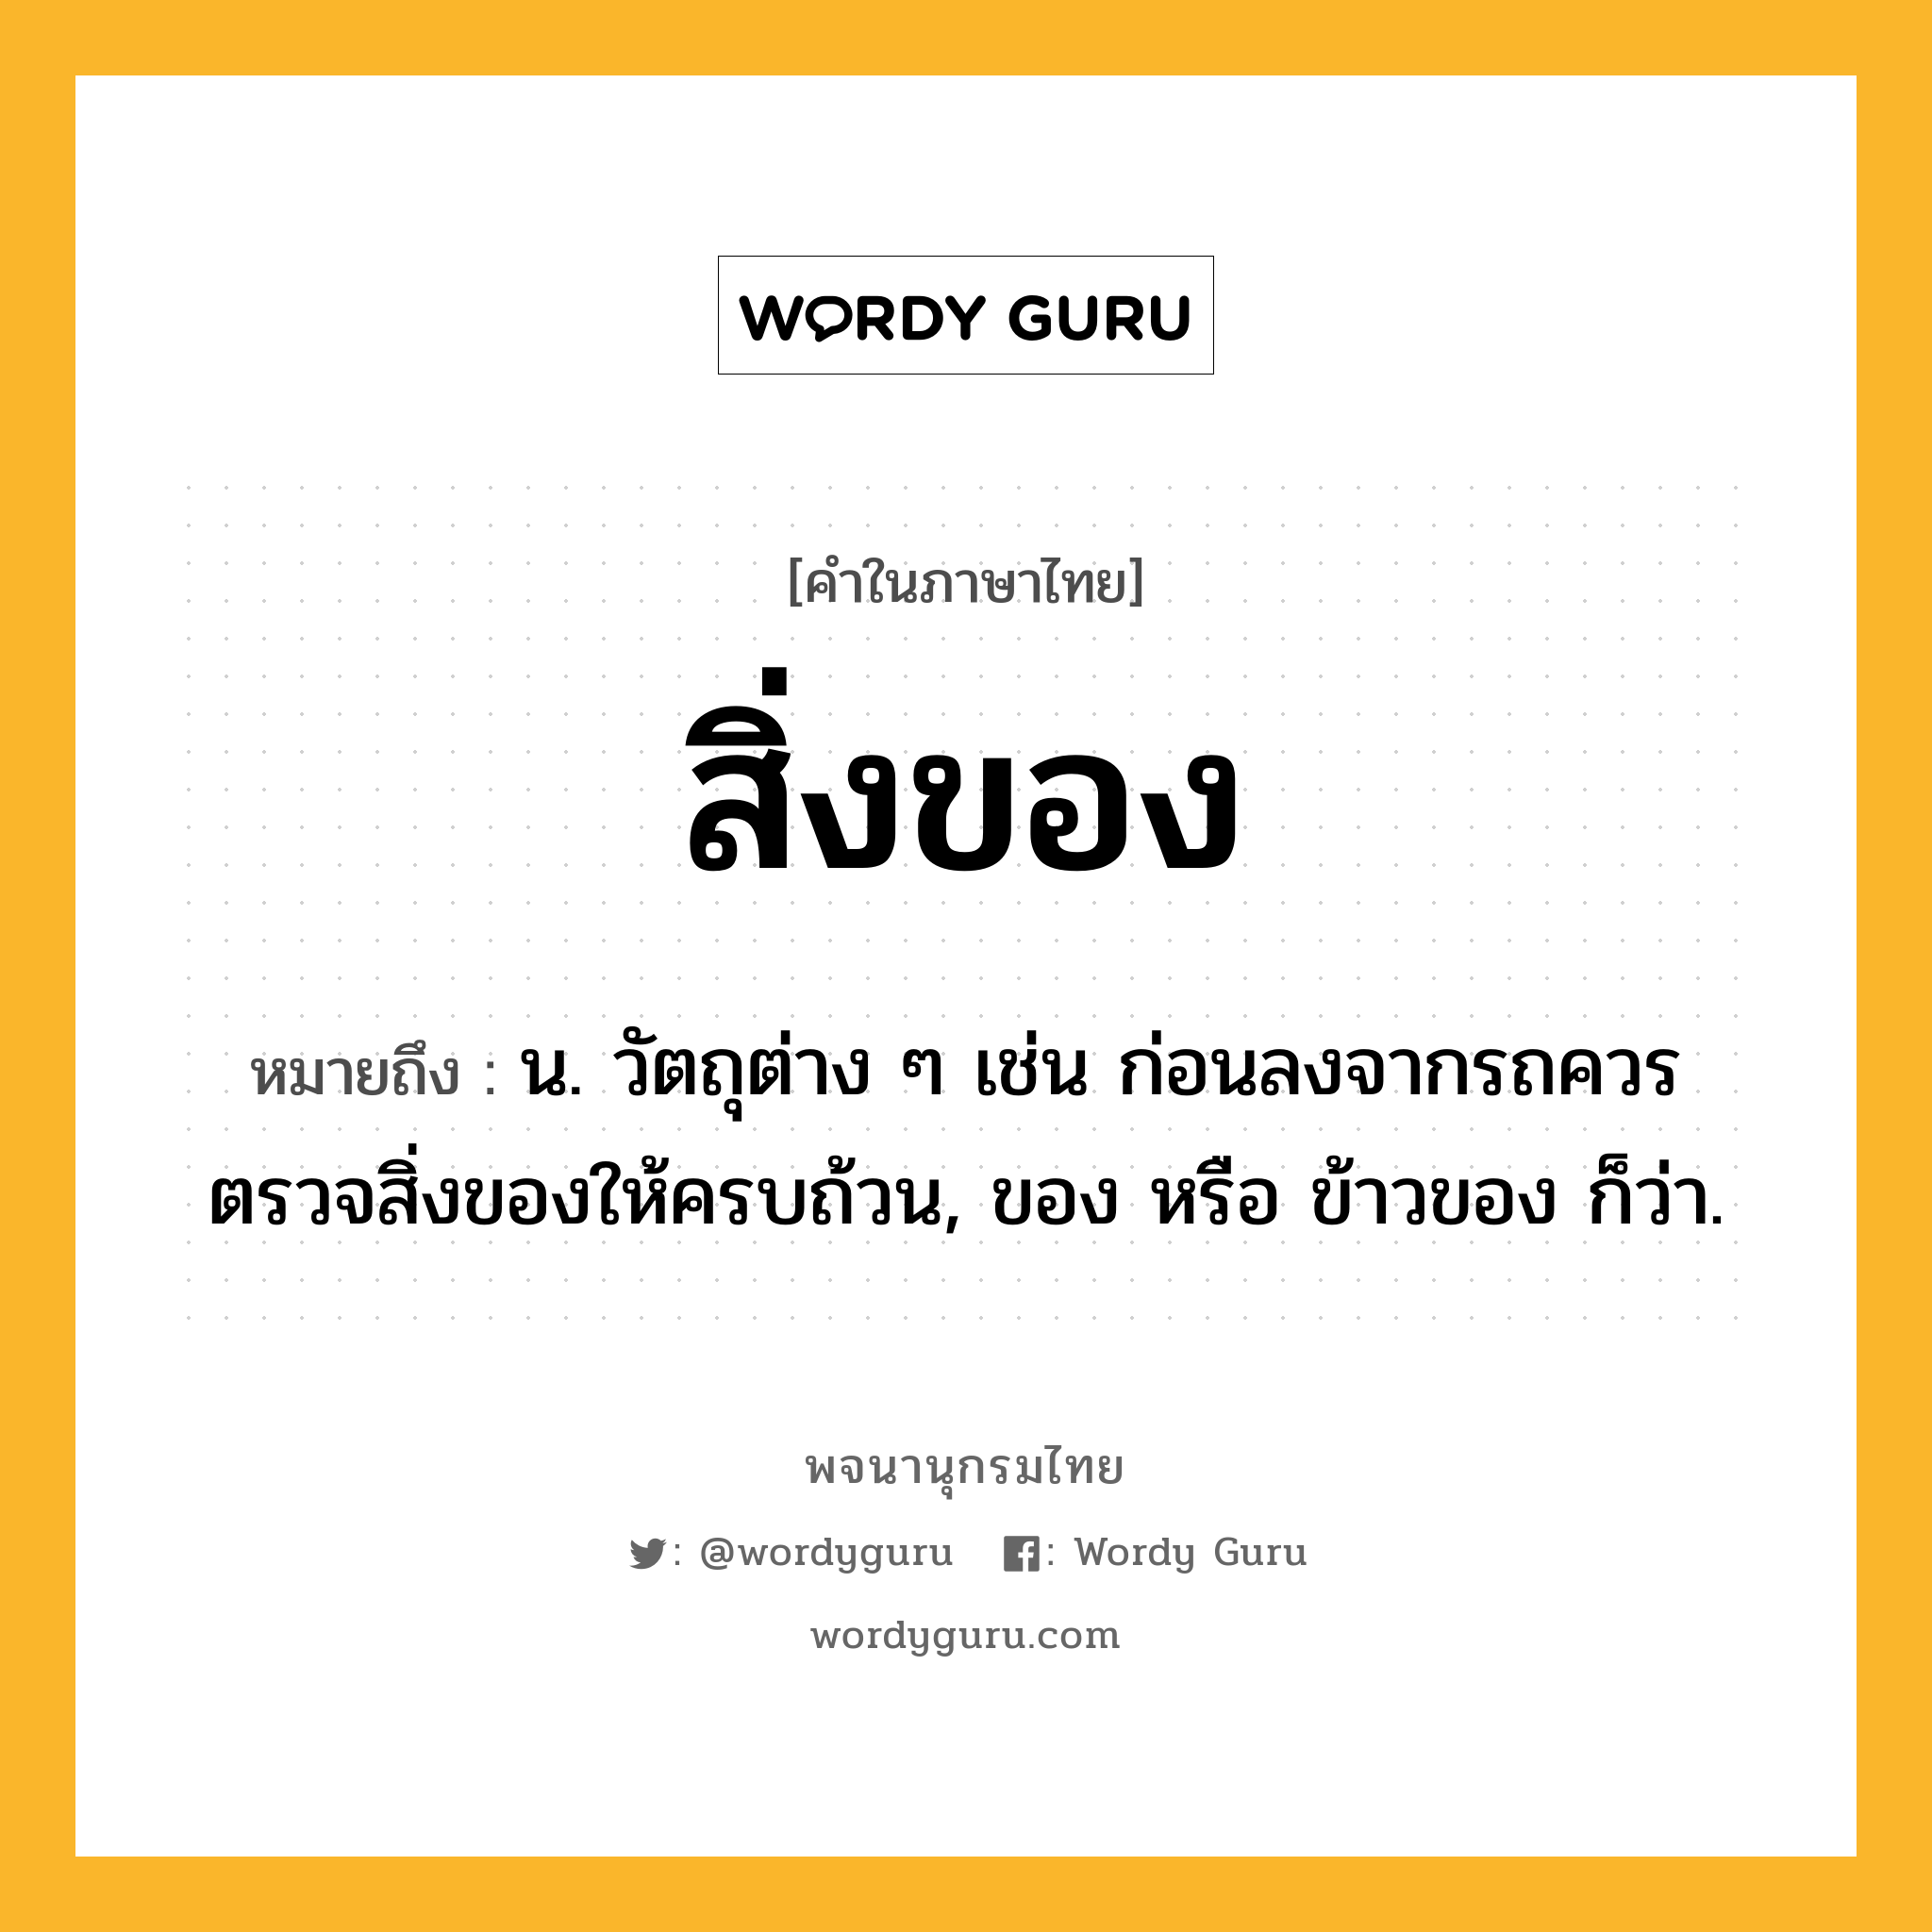 สิ่งของ หมายถึงอะไร?, คำในภาษาไทย สิ่งของ หมายถึง น. วัตถุต่าง ๆ เช่น ก่อนลงจากรถควรตรวจสิ่งของให้ครบถ้วน, ของ หรือ ข้าวของ ก็ว่า.